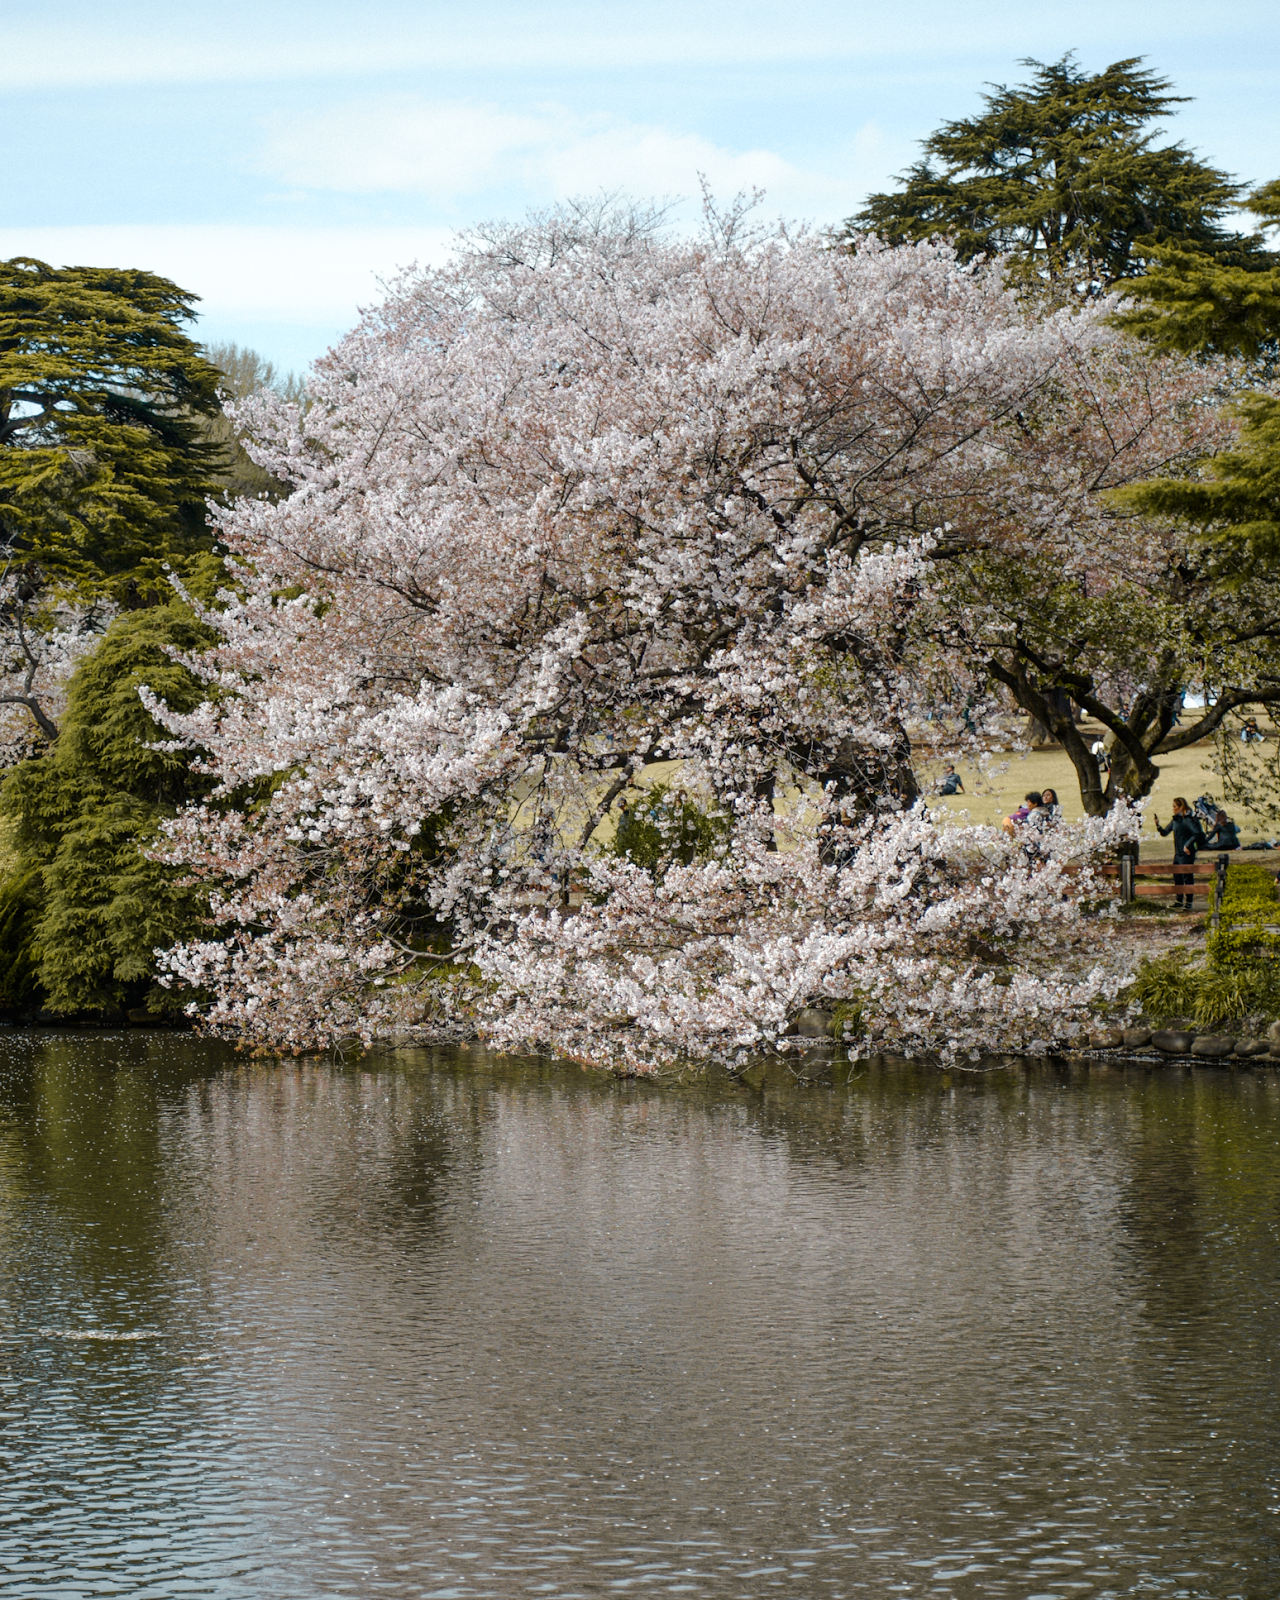 Cherry blossom, Shinjuku park in Tokyo, FOREVERVANNY